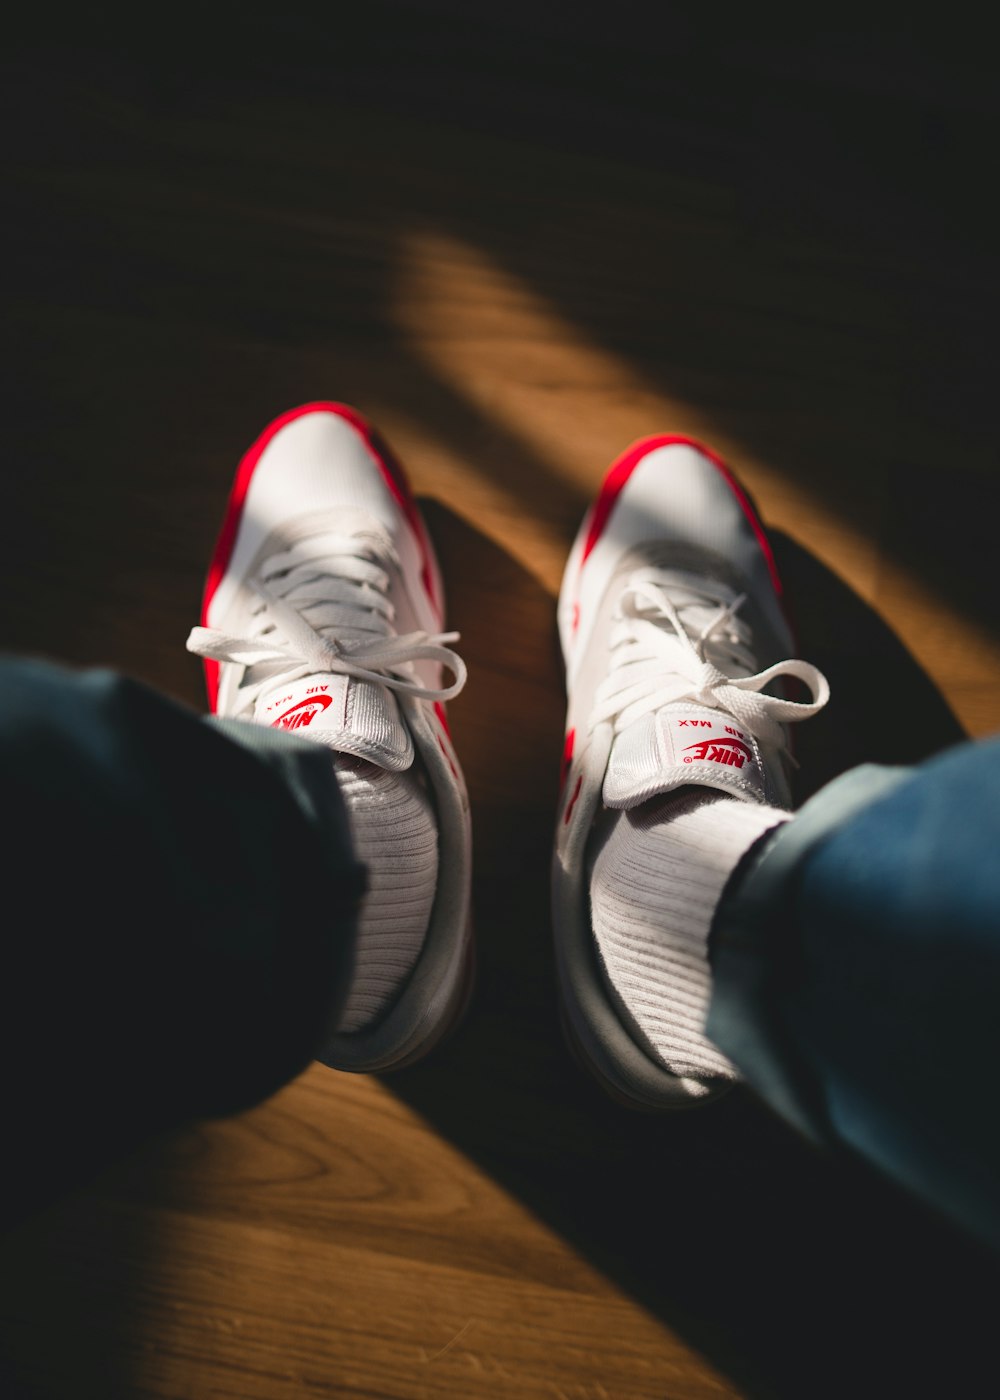 persona sosteniendo zapatillas Nike blancas y rojas